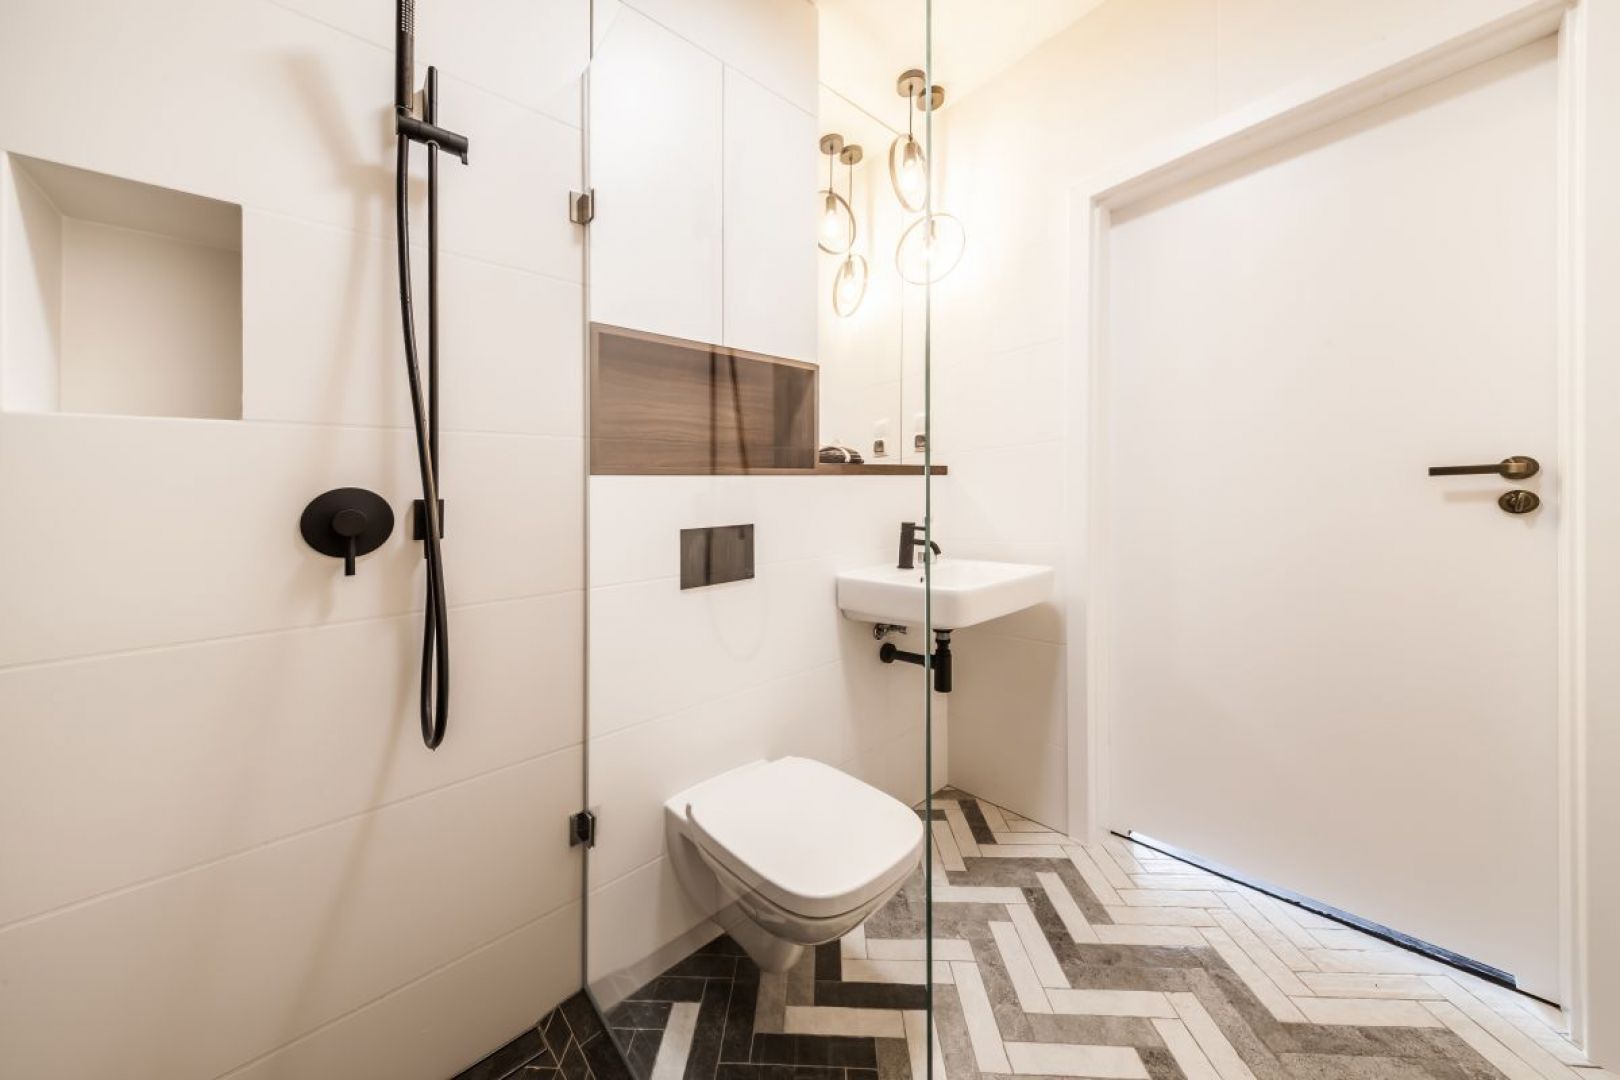 Motyw jodełki zastosowano także w projekcie łazienki, dzięki czemu współgra stylistycznie z pozostałą częścią mieszkania. Fot. Kodo